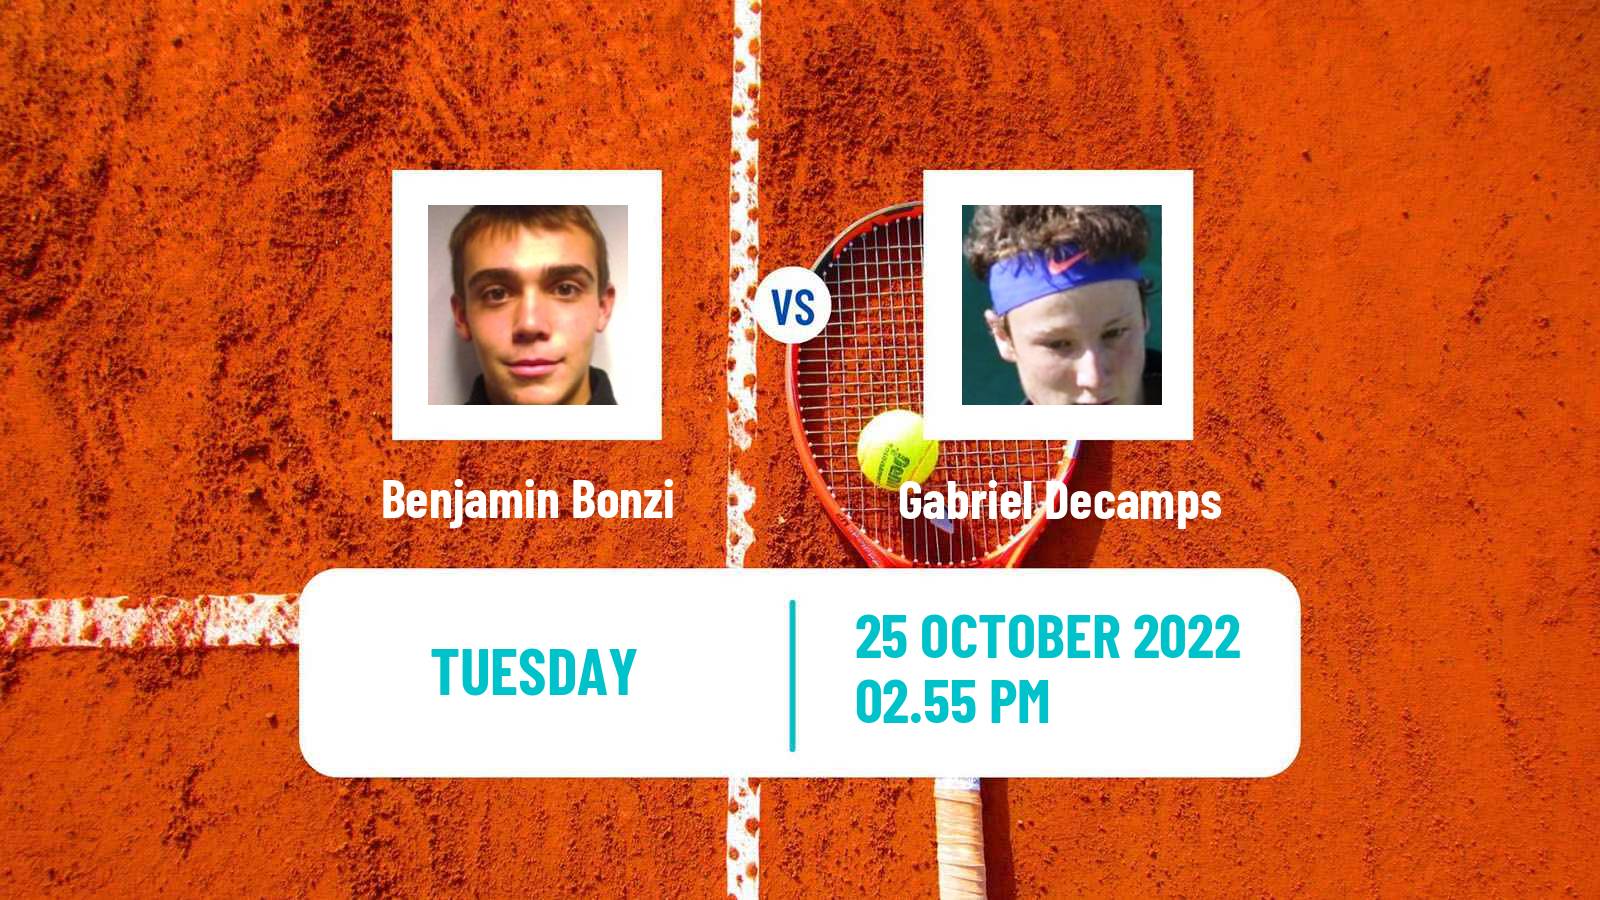 Tennis ATP Challenger Benjamin Bonzi - Gabriel Decamps